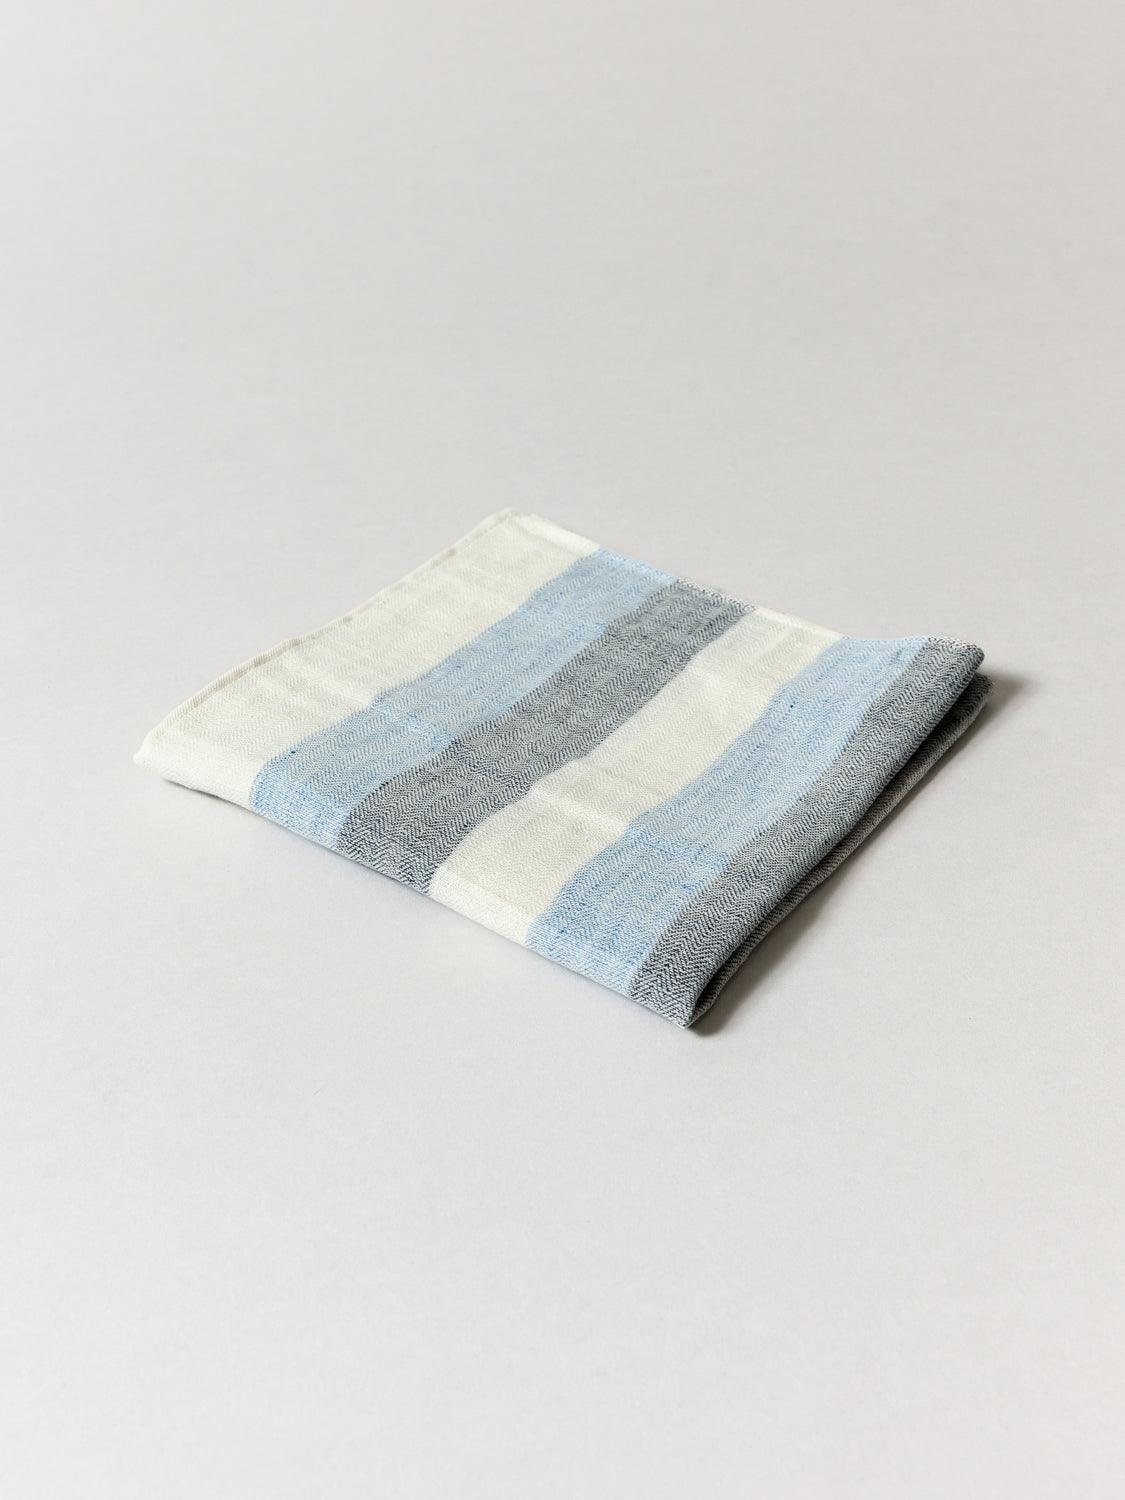 Hemp + Linen + Cotton dish towels — deanna lynch textiles